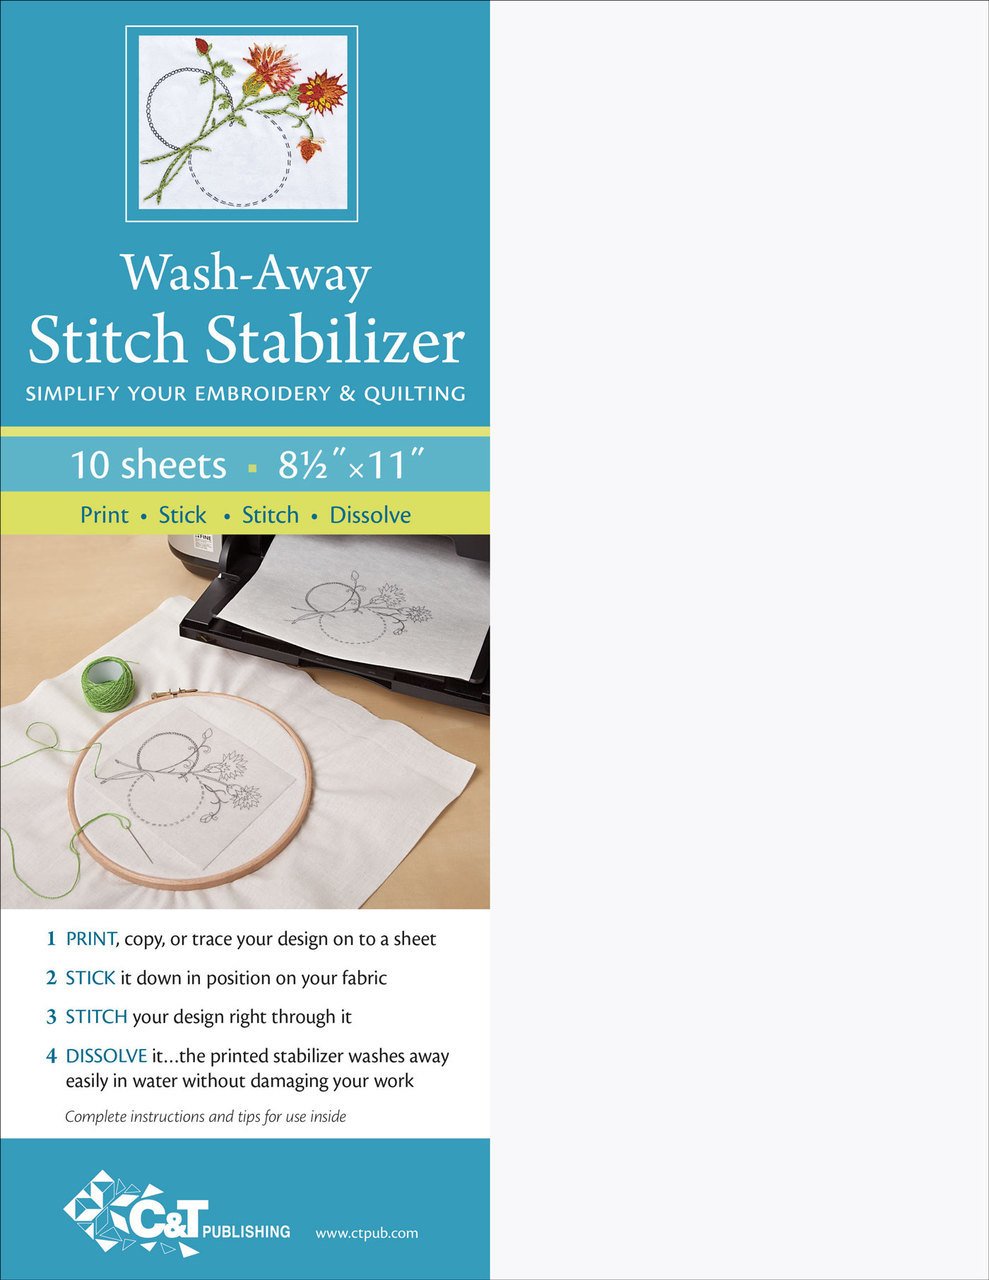 Wash-Away Stitch Stabilizer